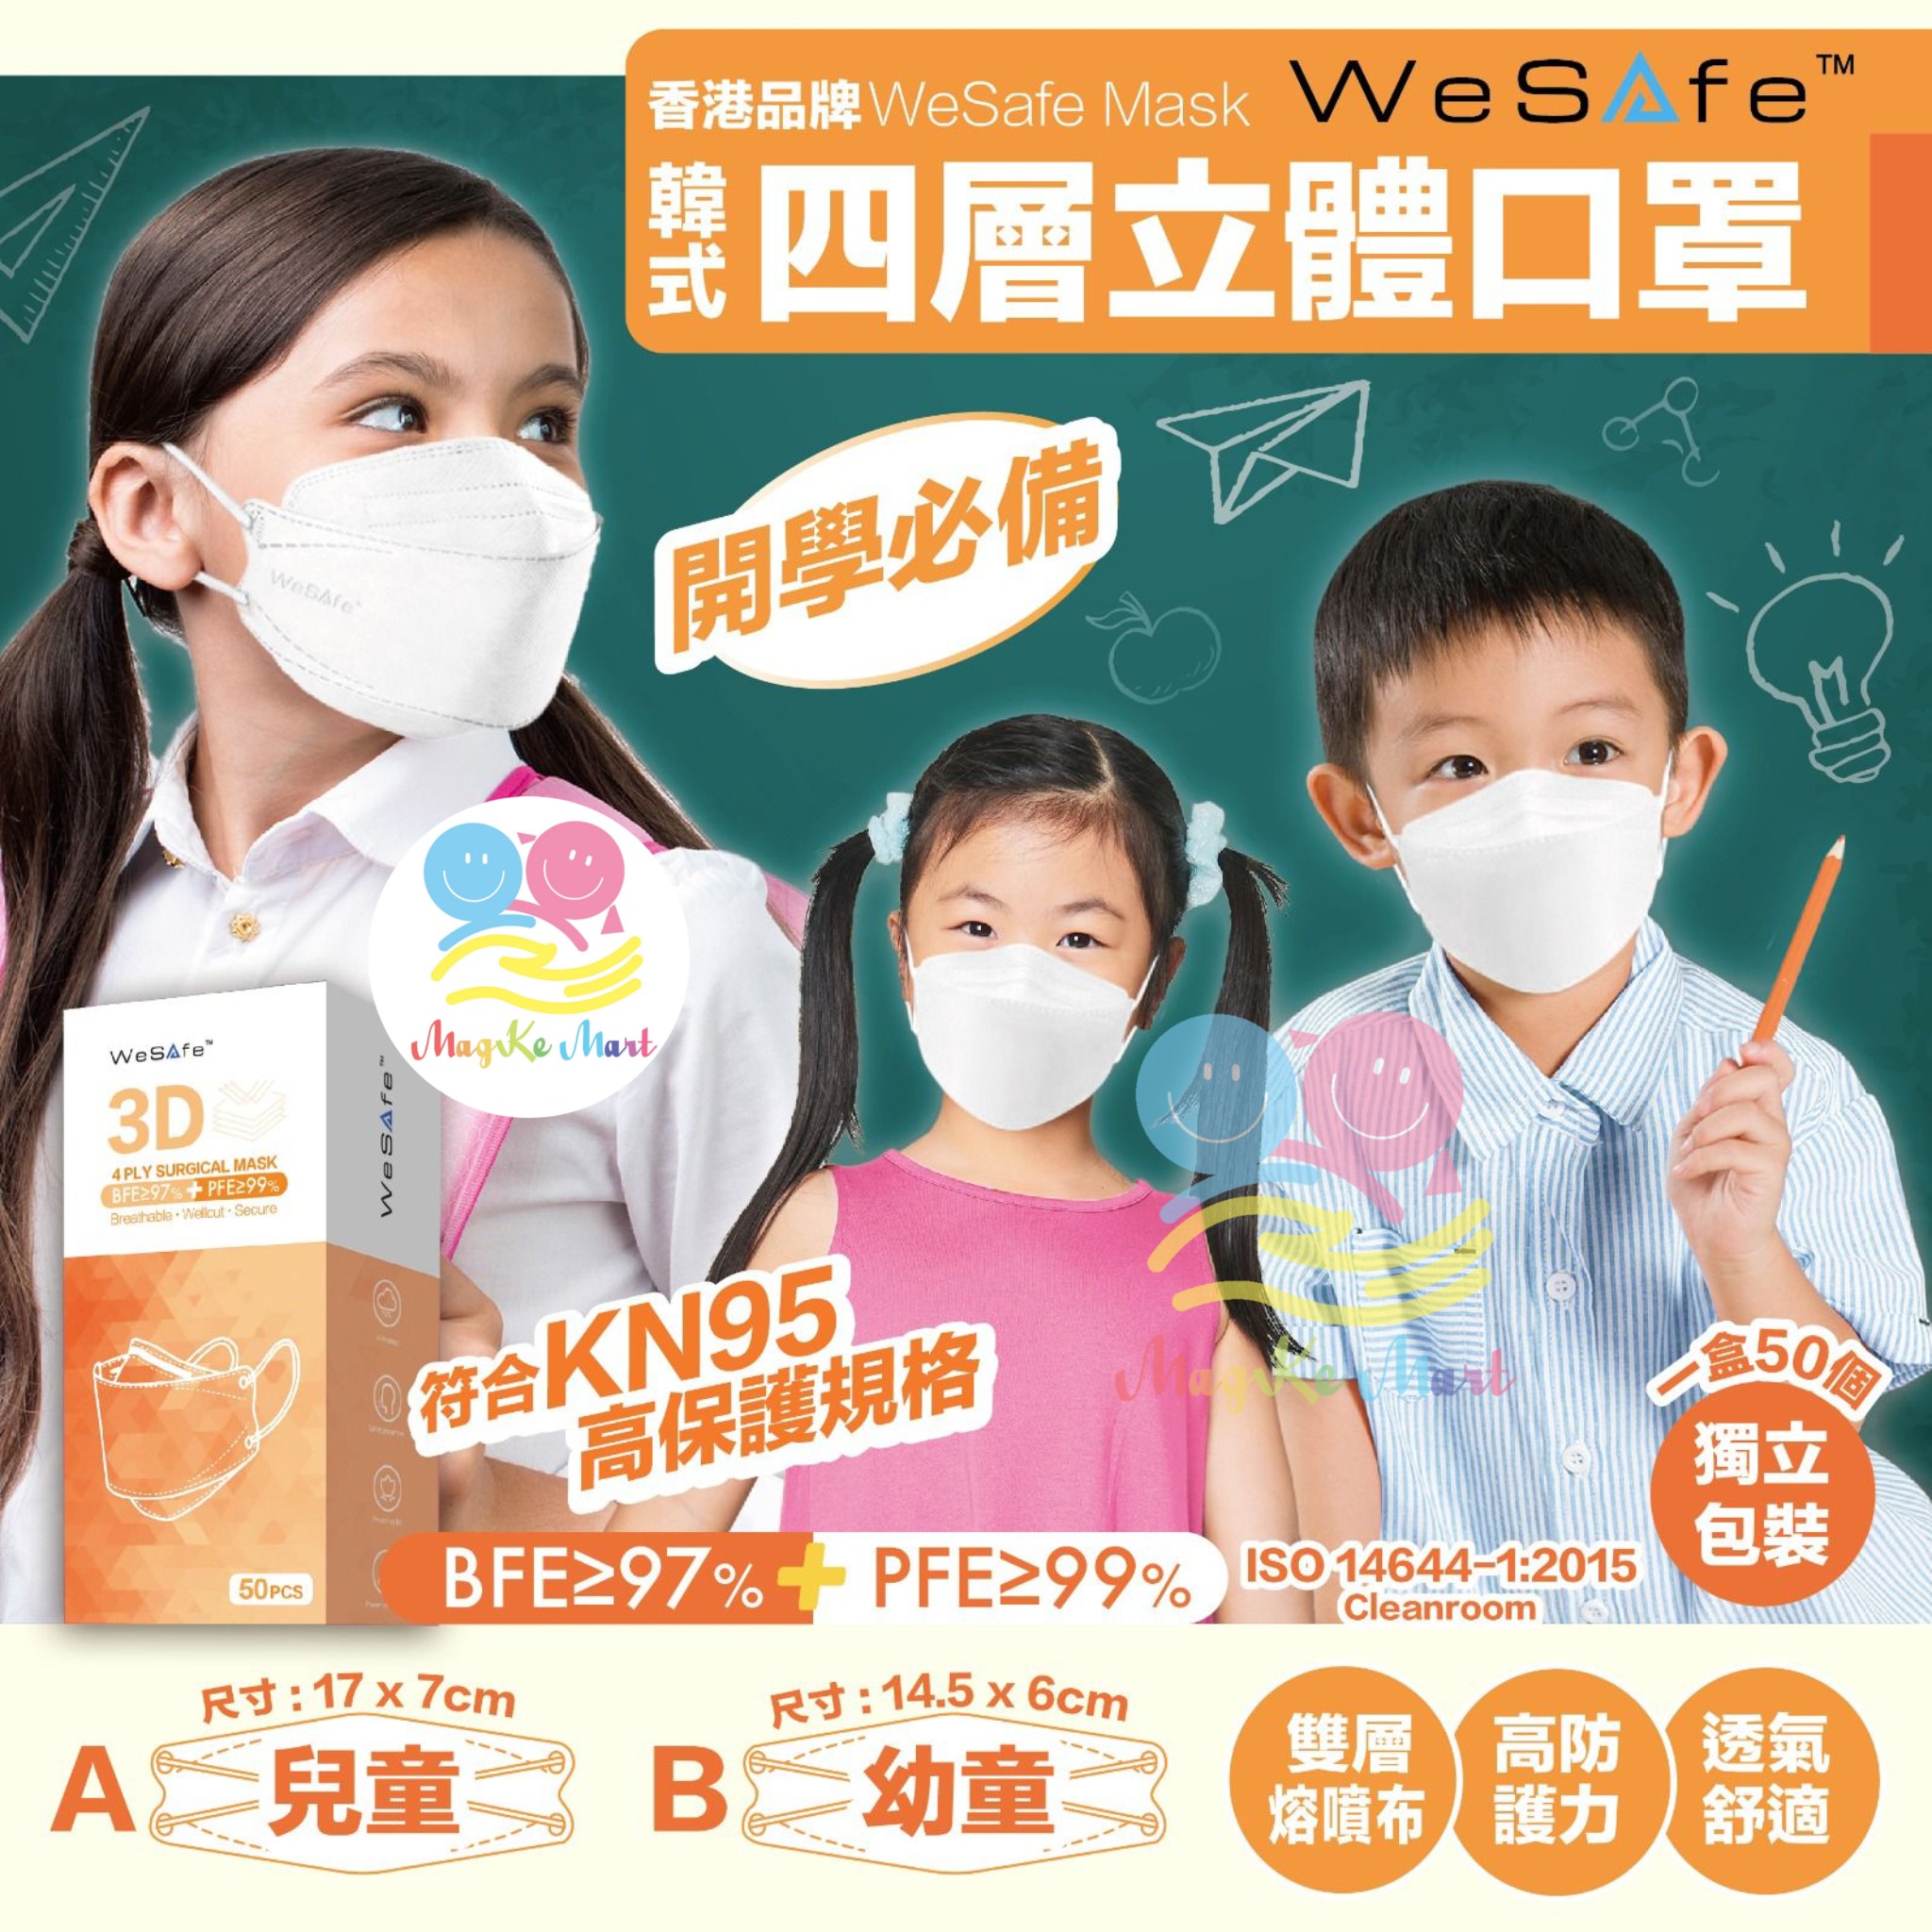 WeSafe 韓式四層立體白色口罩(1盒50個)(獨立包裝) (B) 幼童